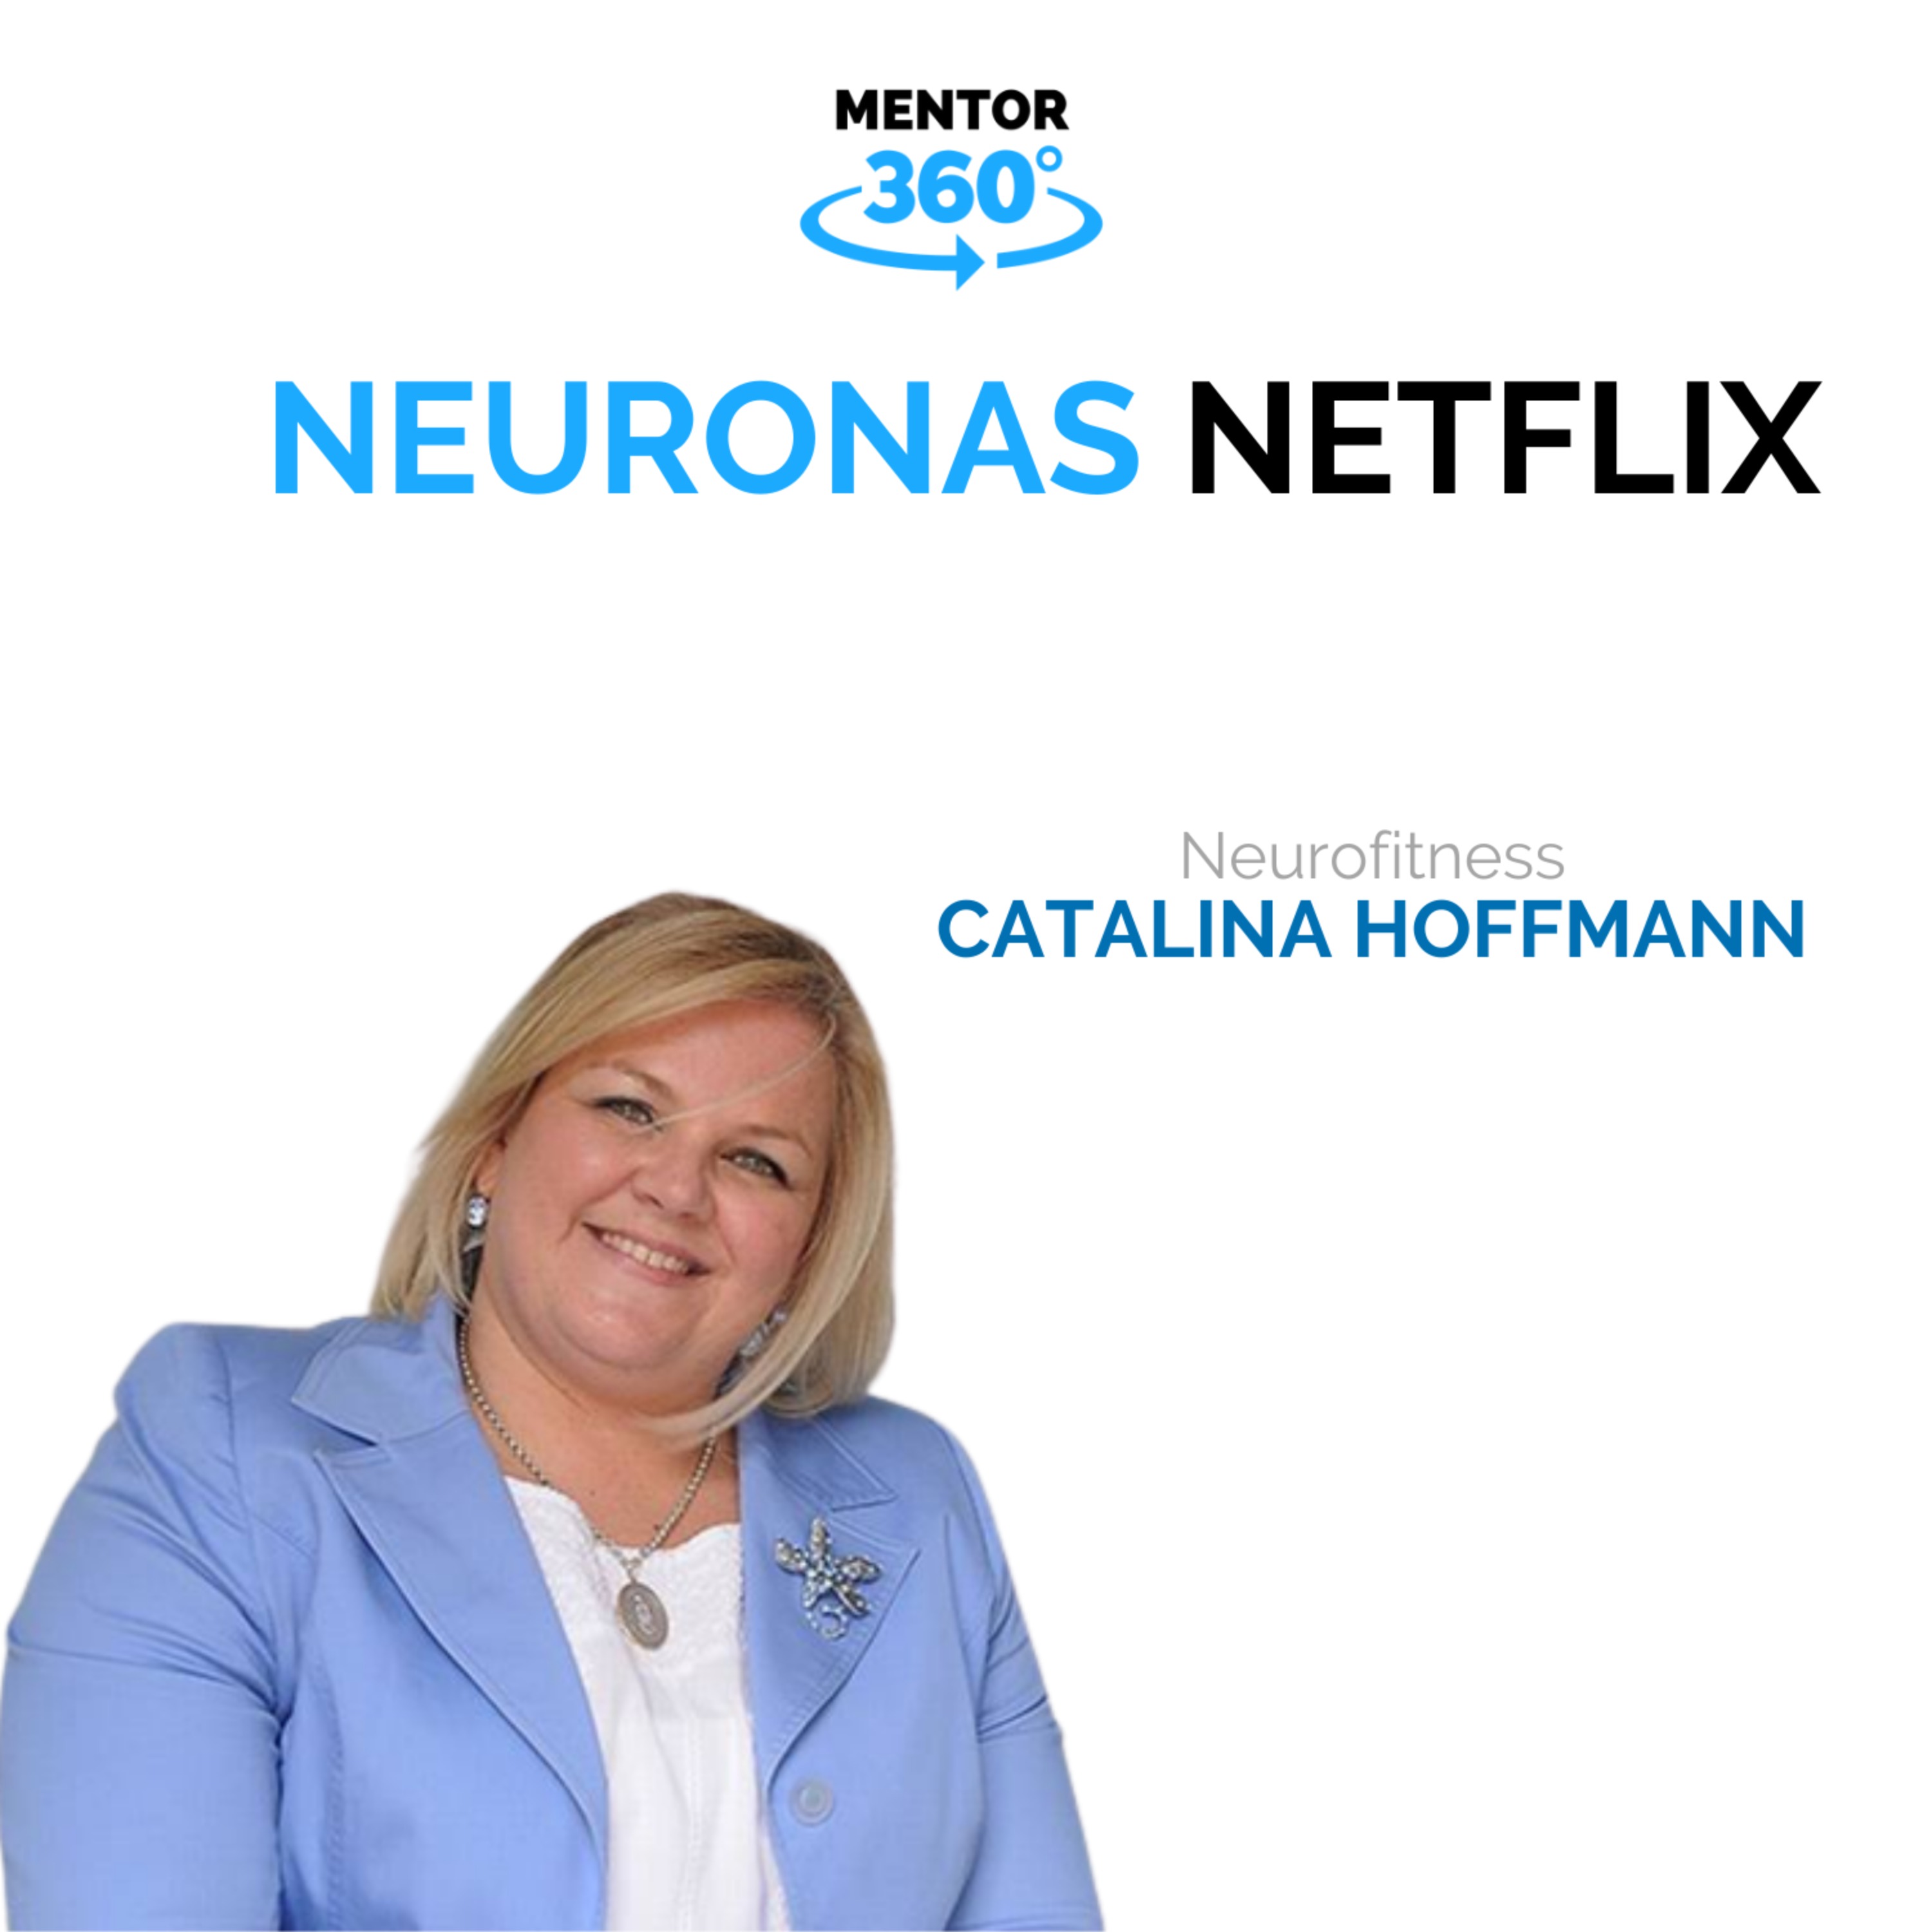 Neuronas Netflix - Neurofitness - Catalina Hoffmann - MENTOR360